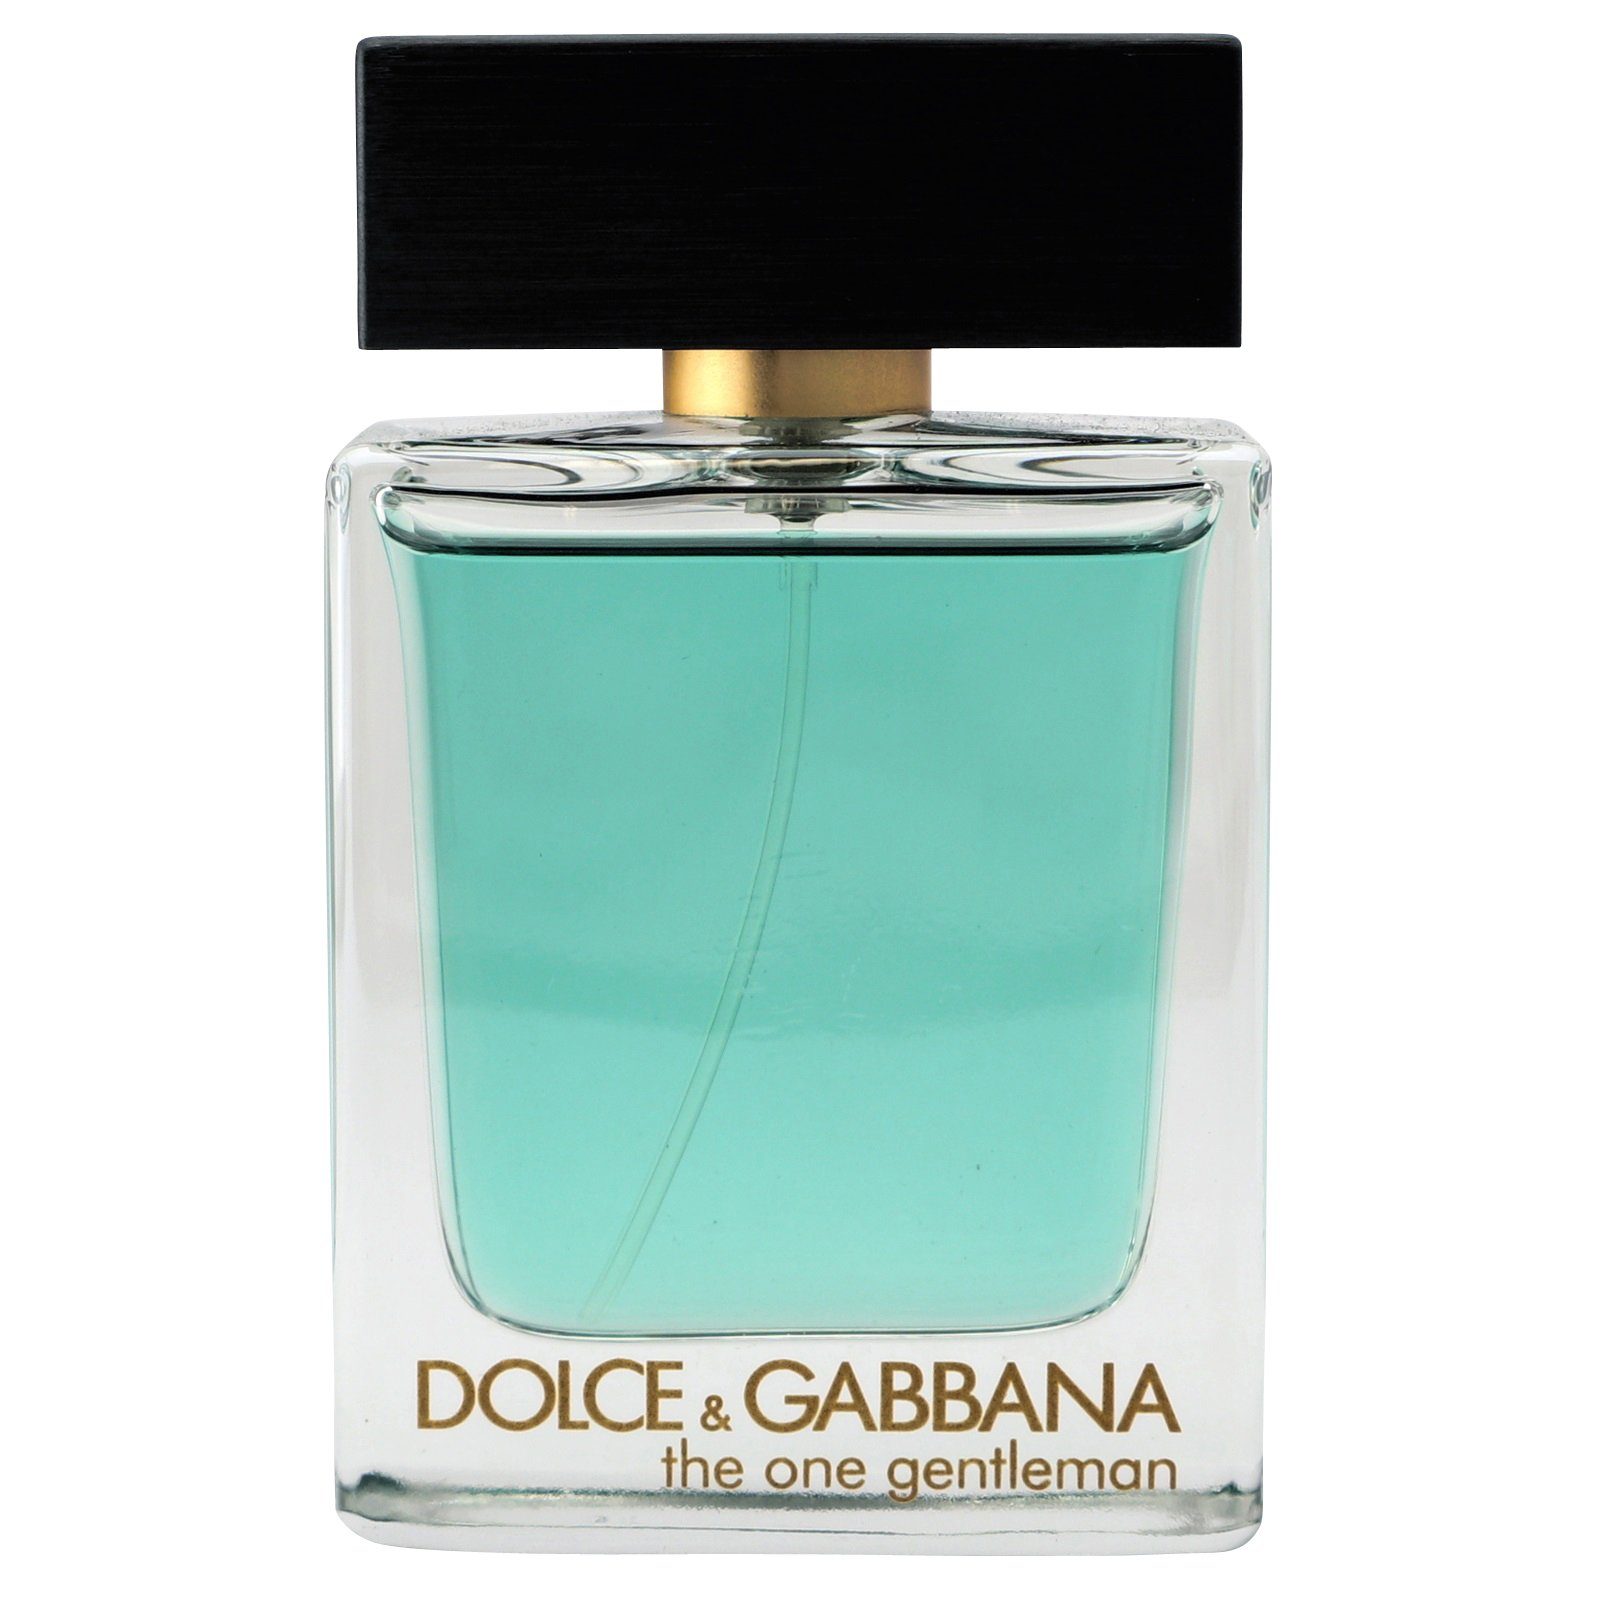 DOLCE & Gabbana Gentleman ml Spray & Eau de Toilette One Dolce 50 GABBANA The Toilette de Eau